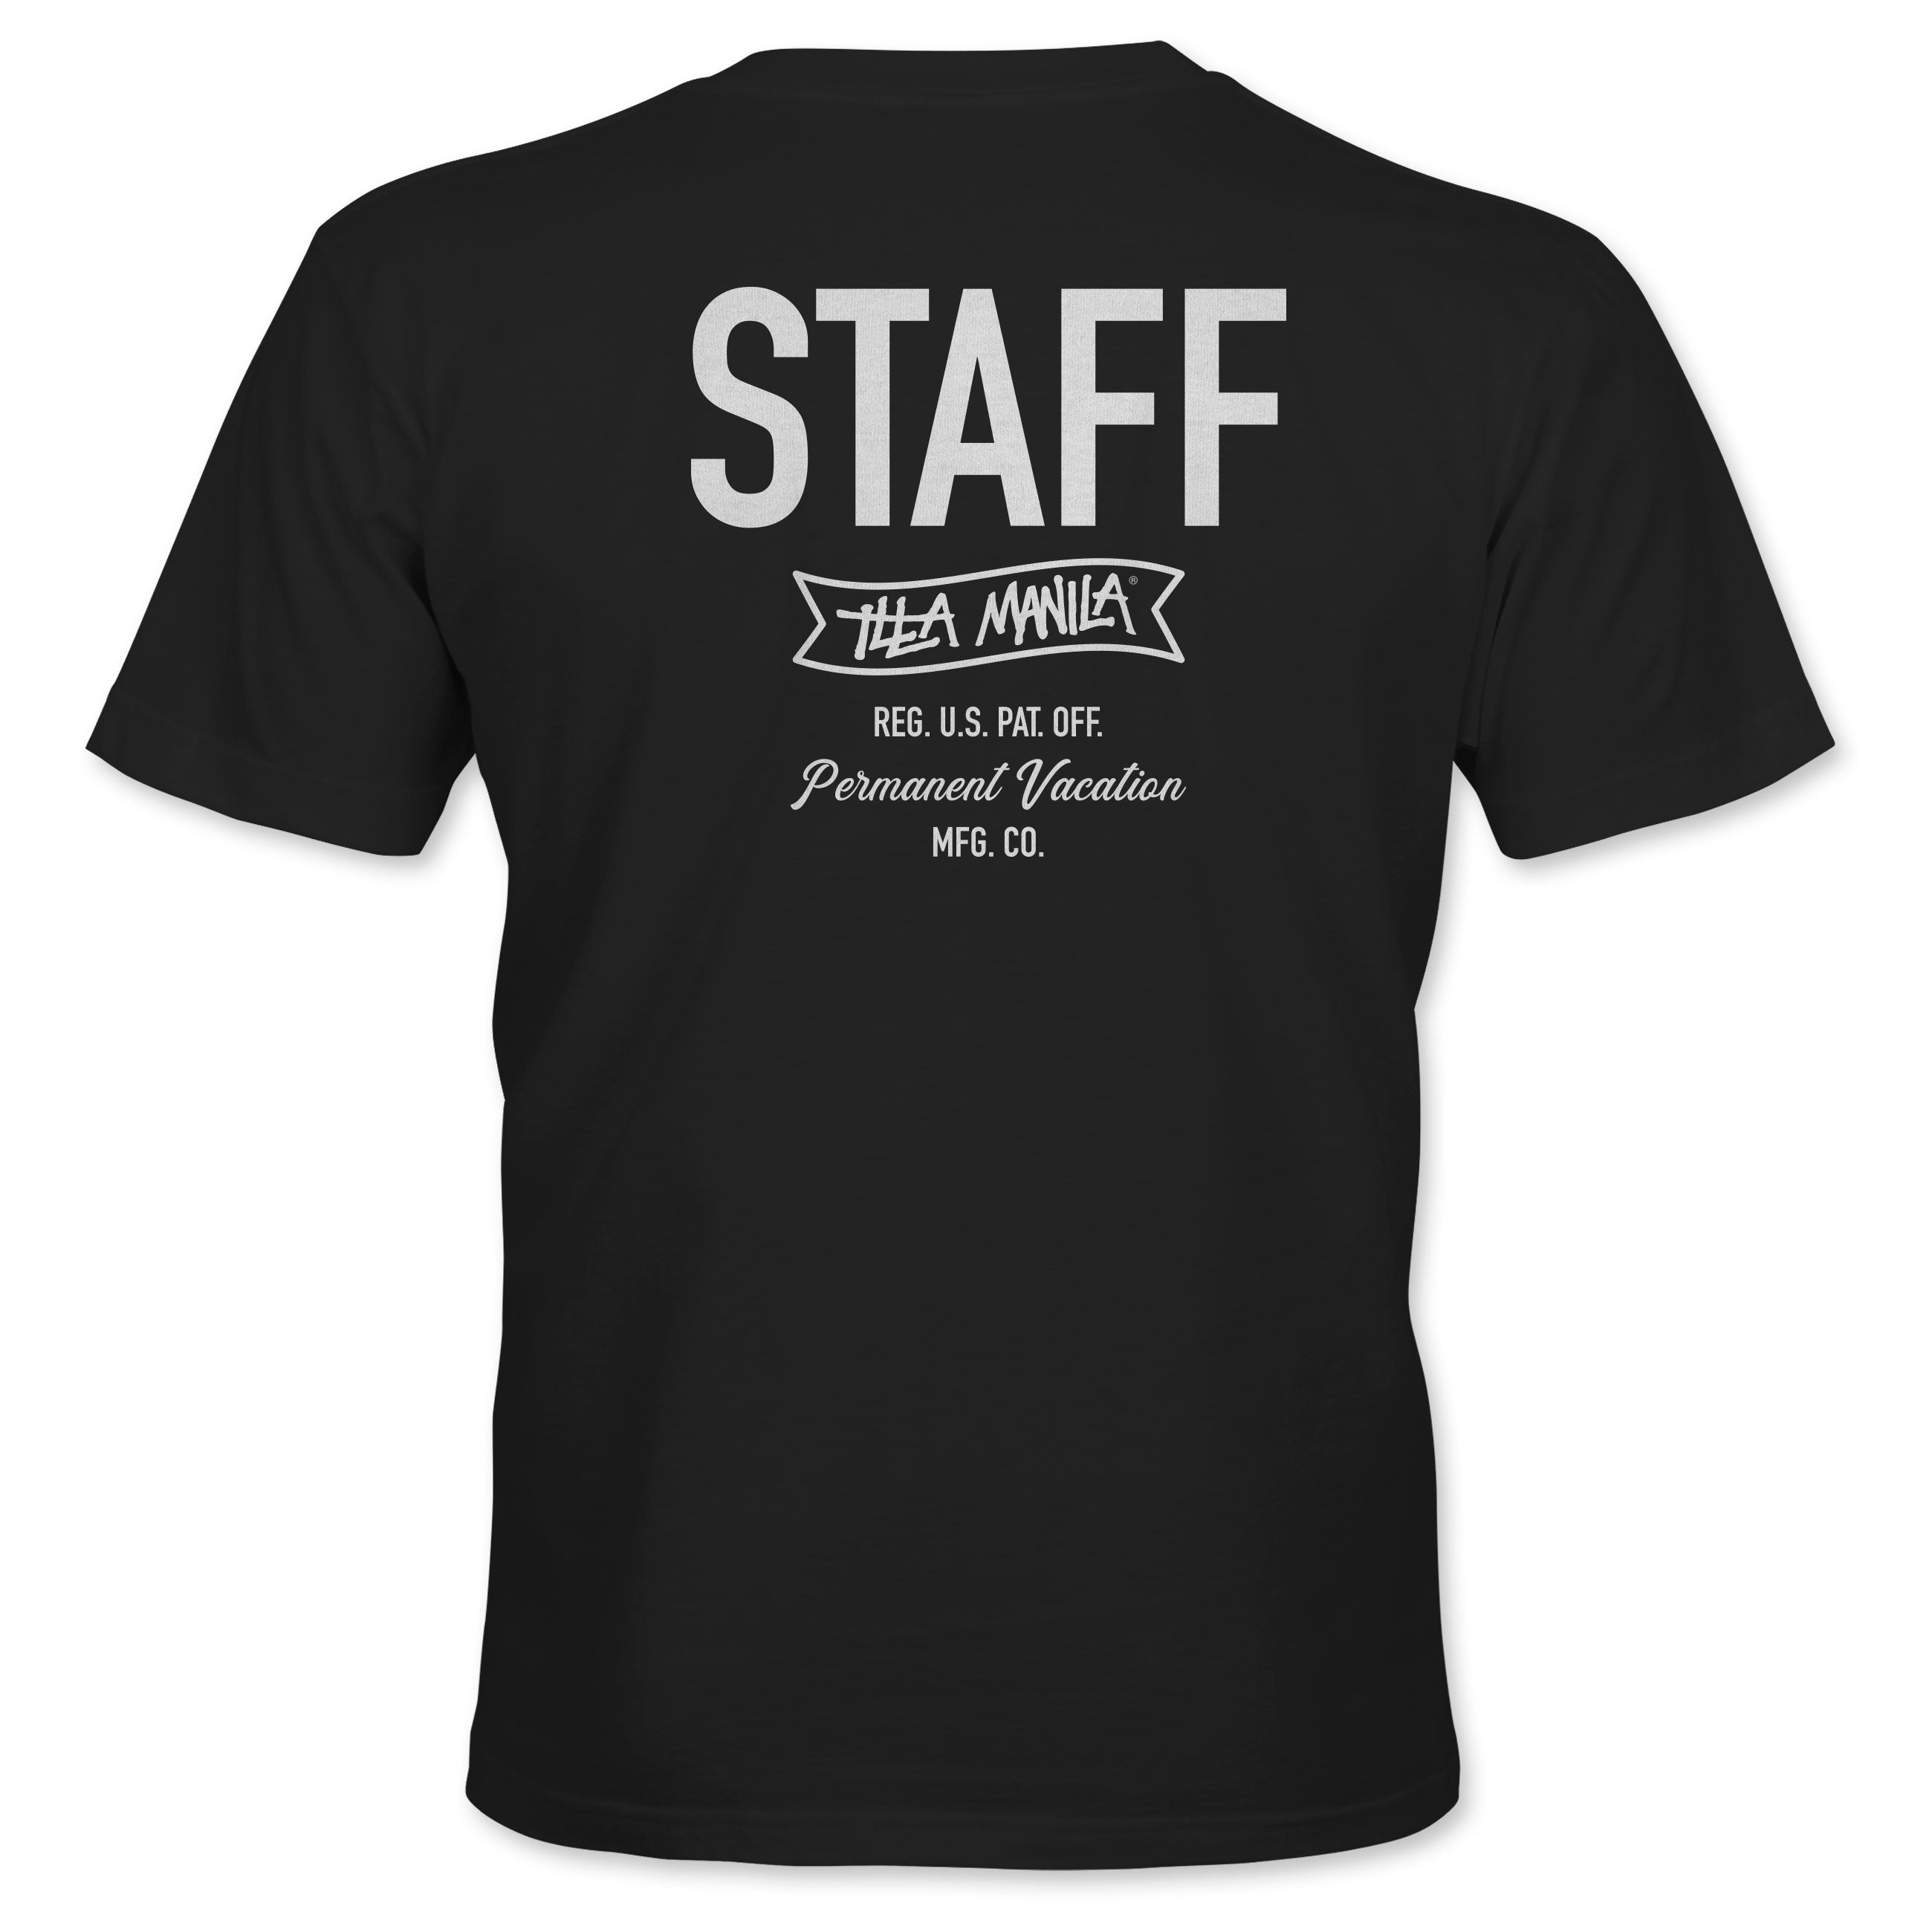 ILLA STAFF T-shirt - Black